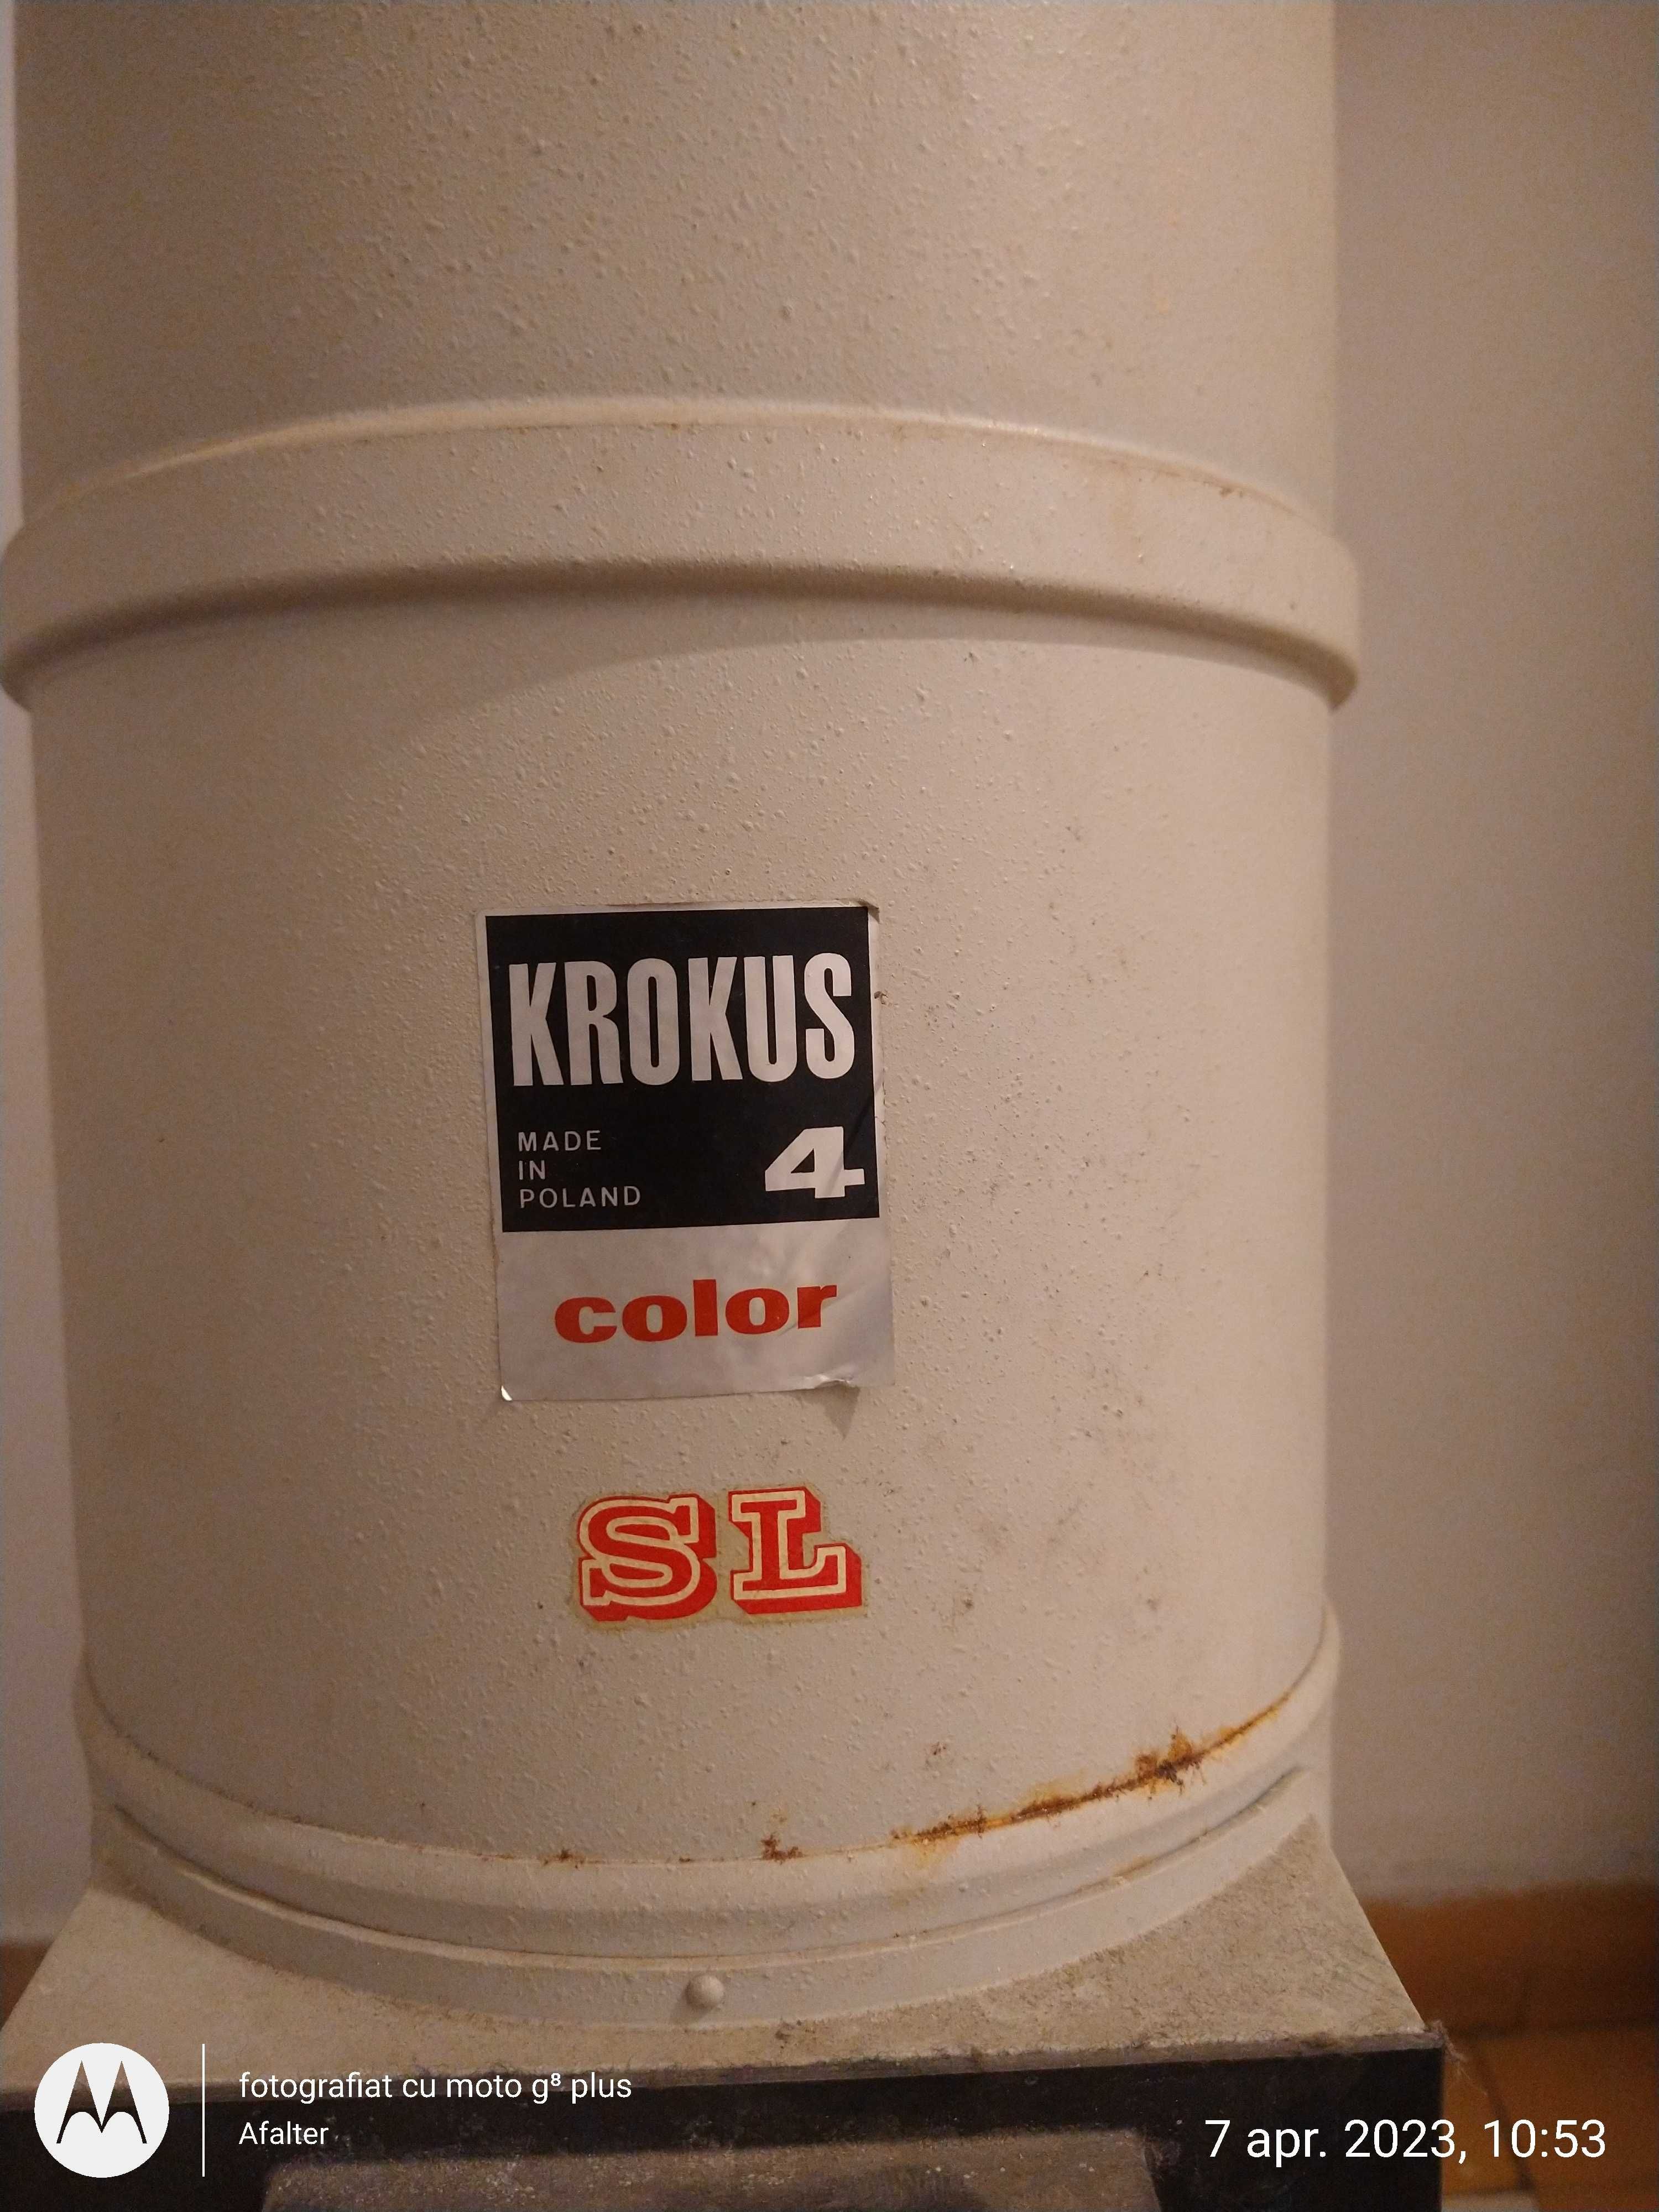 Krokus 4 color sl original